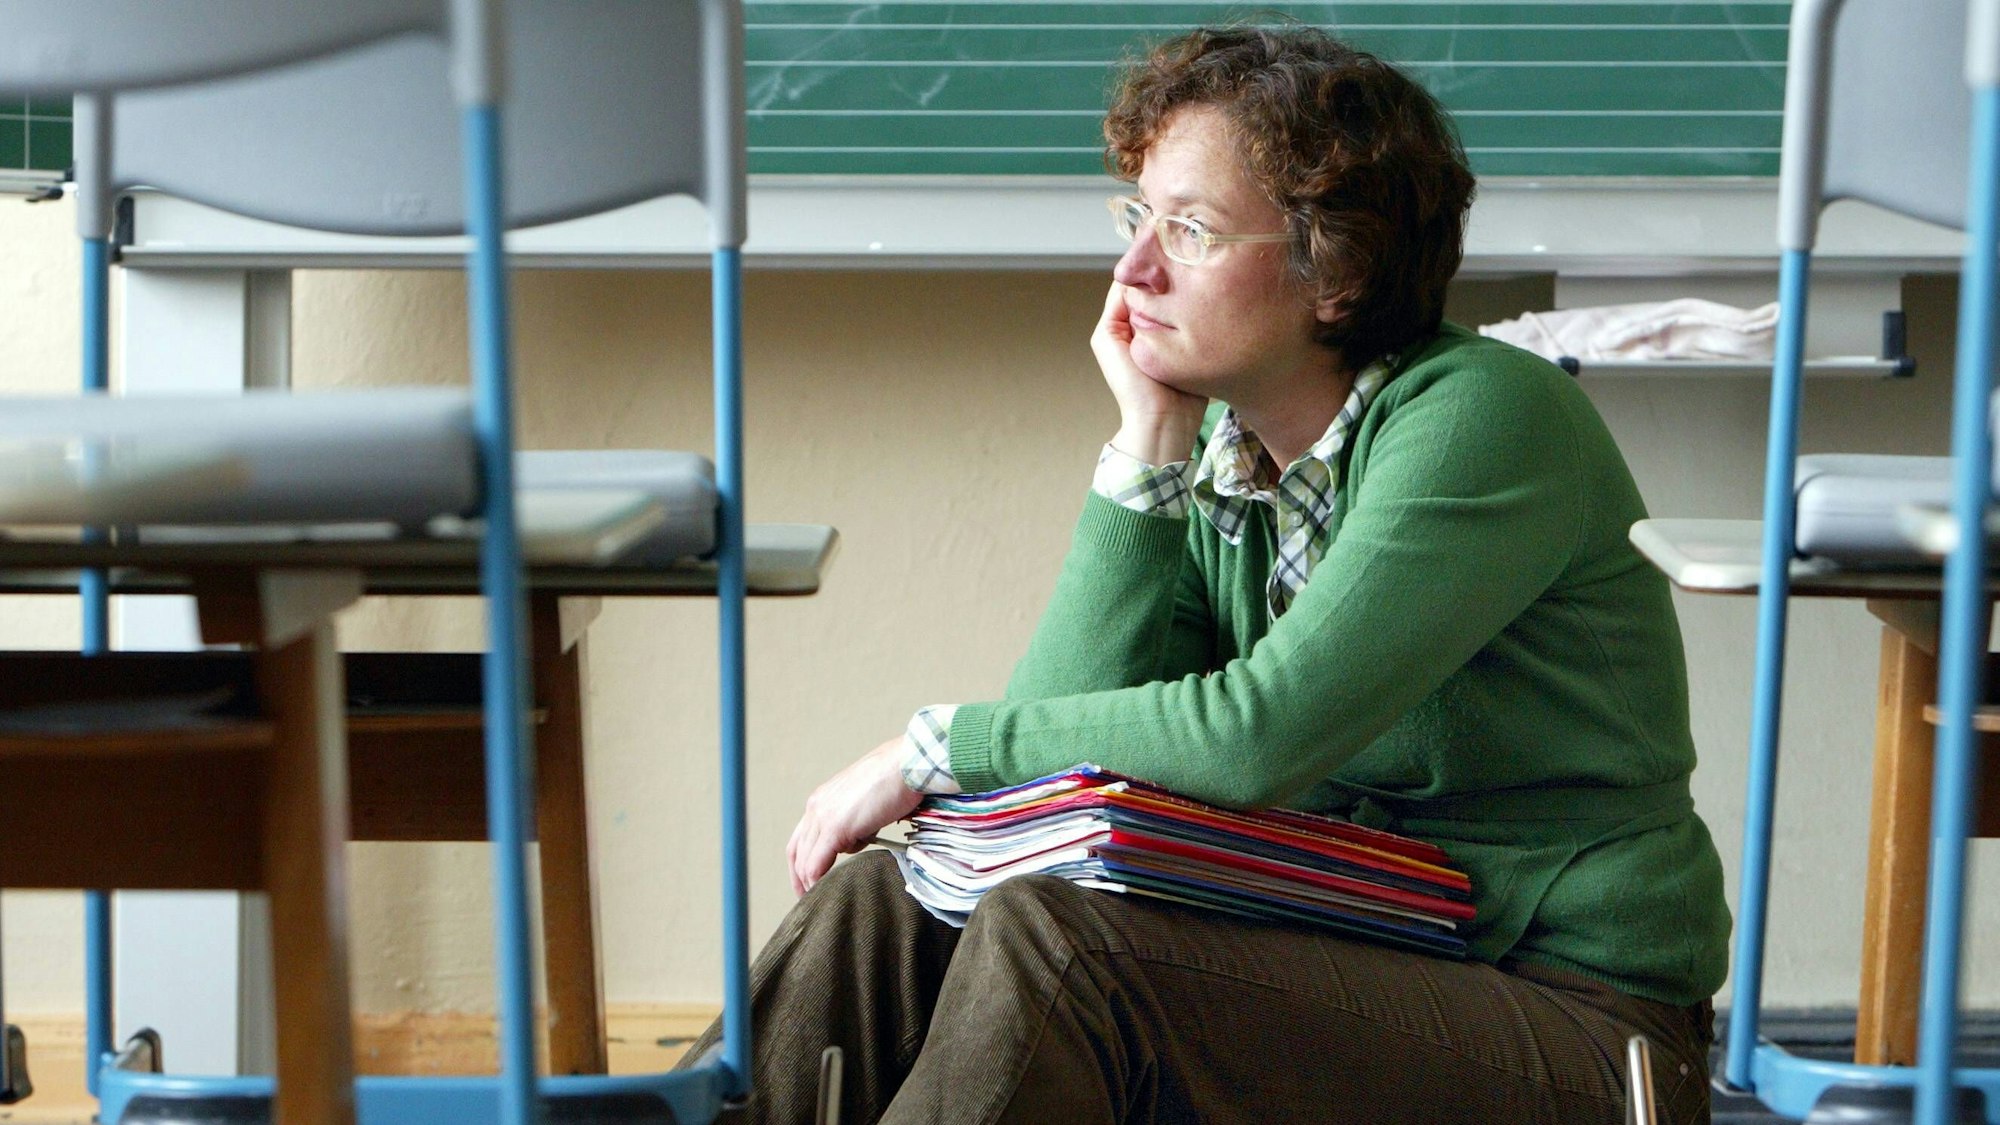 Eine Lehrerin sitzt auf dem Boden eines Klassenzimmers zwischen leeren Stühlen, hinter sich die Tafel. Auf dem Schoß hält sie einen Stapel von Heften im DIN-A4-Format. Eine Hand aufgestützt, schaut sie frustriert und traurig nach links.